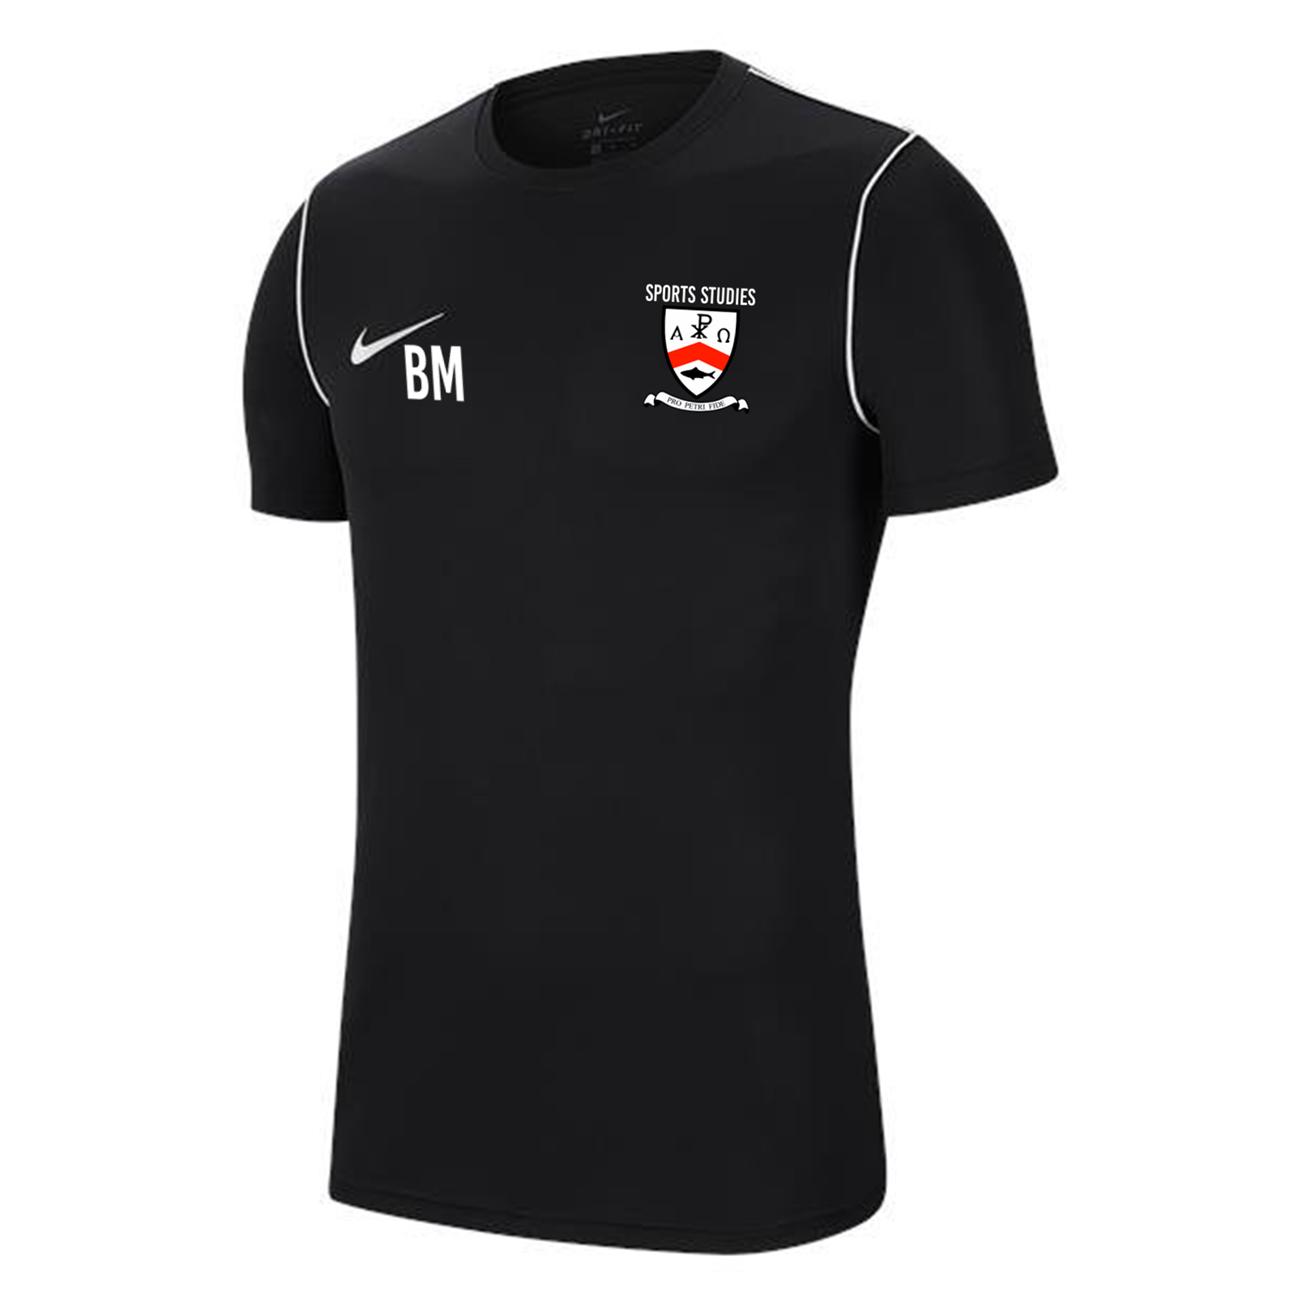 Bishop Milner Sports Studies - T-Shirt